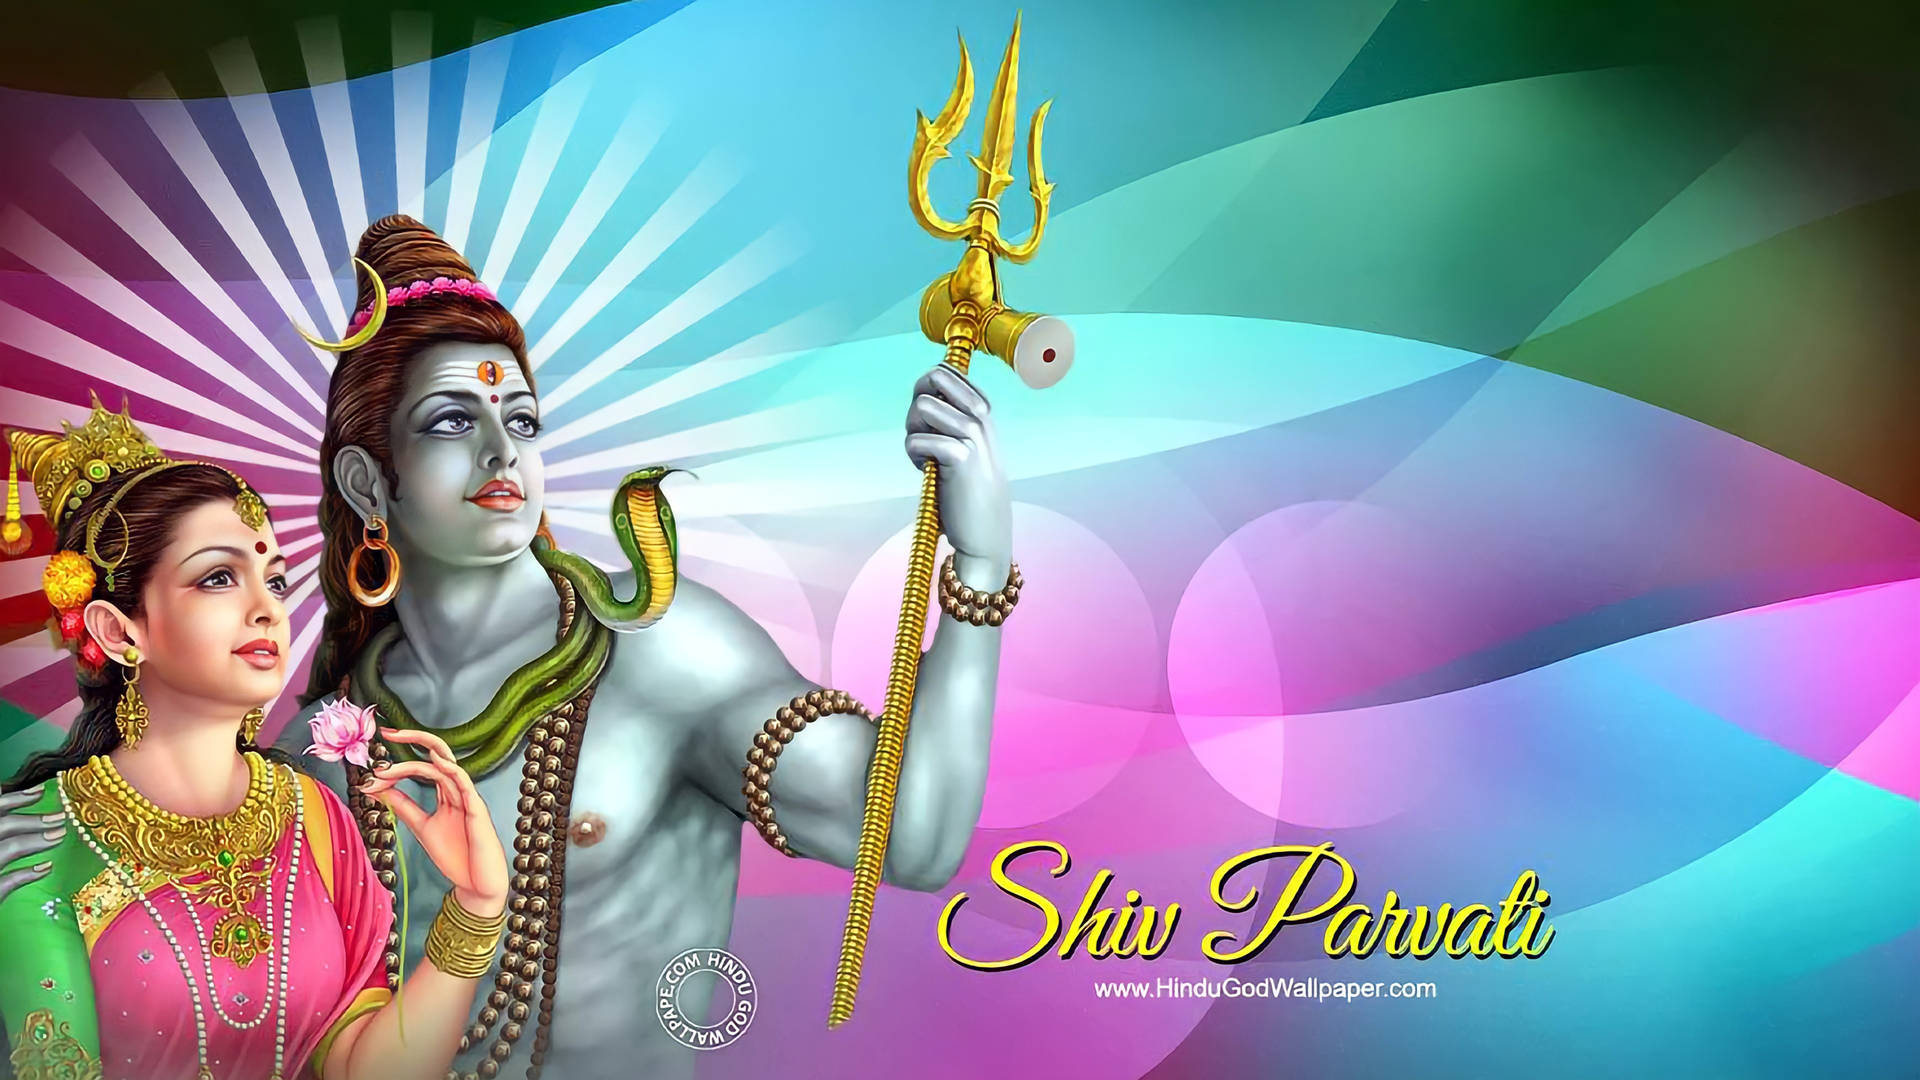 Free Shiv Parvati Hd Wallpaper Downloads, [100+] Shiv Parvati Hd Wallpapers  for FREE 